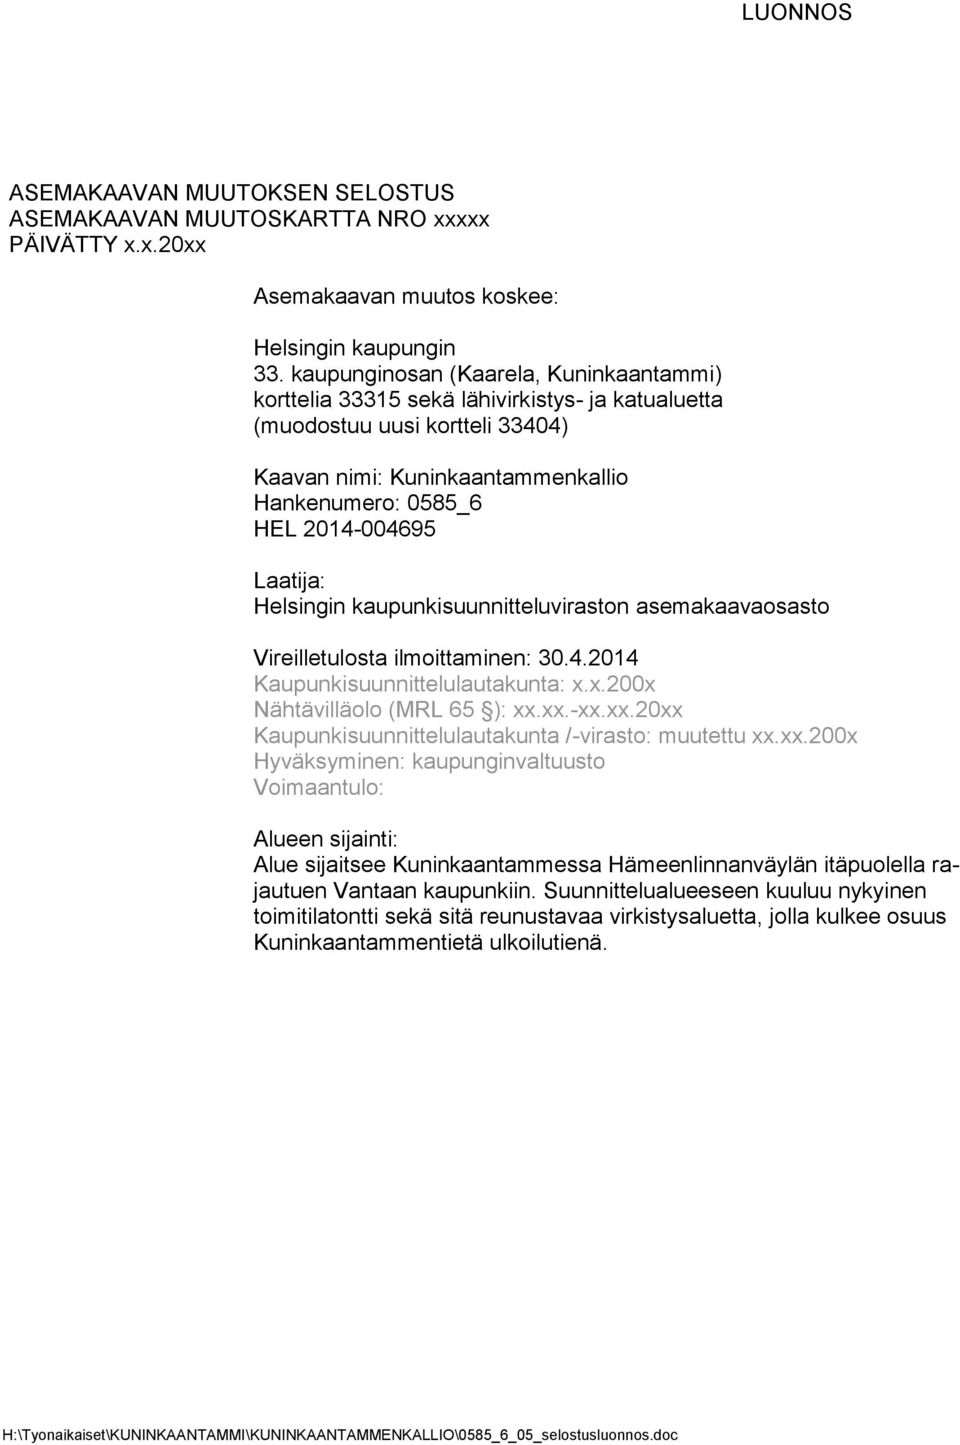 Laatija: Helsingin kaupunkisuunnitteluviraston asemakaavaosasto Vireilletulosta ilmoittaminen: 30.4.2014 Kaupunkisuunnittelulautakunta: x.x.200x Nähtävilläolo (MRL 65 ): xx.